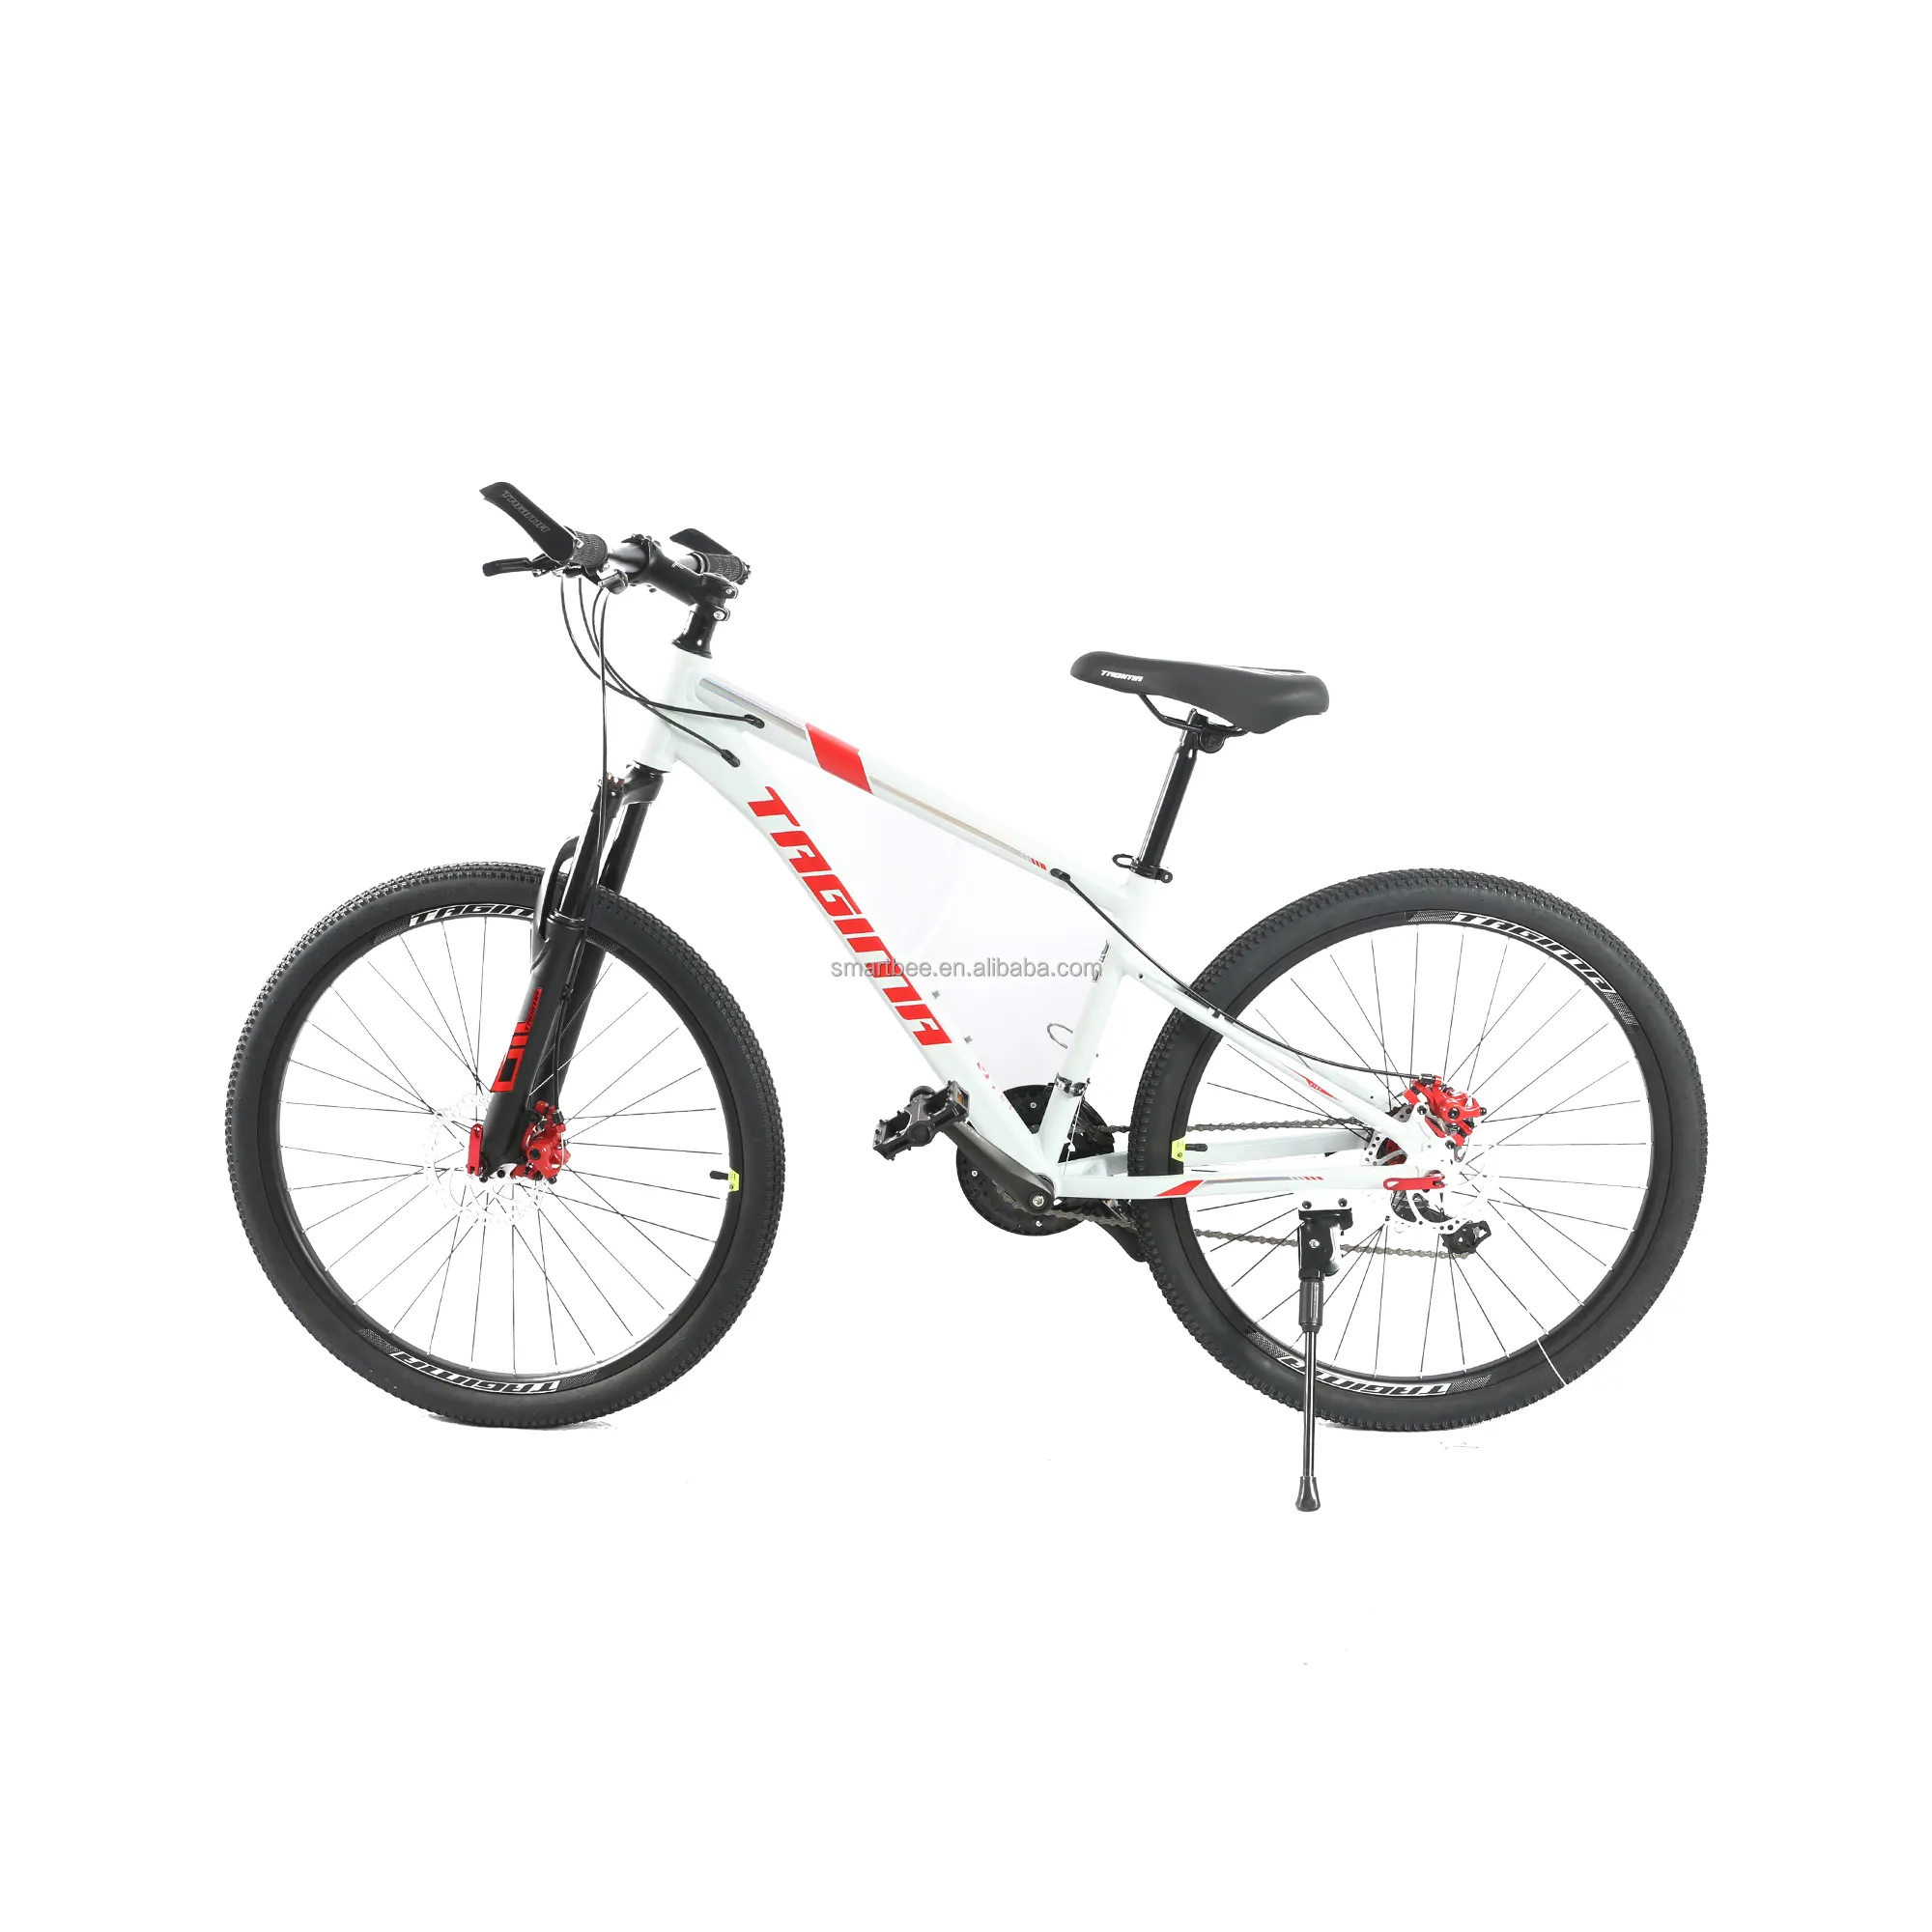 Горный велосипед для взрослых, 26 дюймов, 27,5 дюйма, 21 скорость, рама из алюминиевого сплава